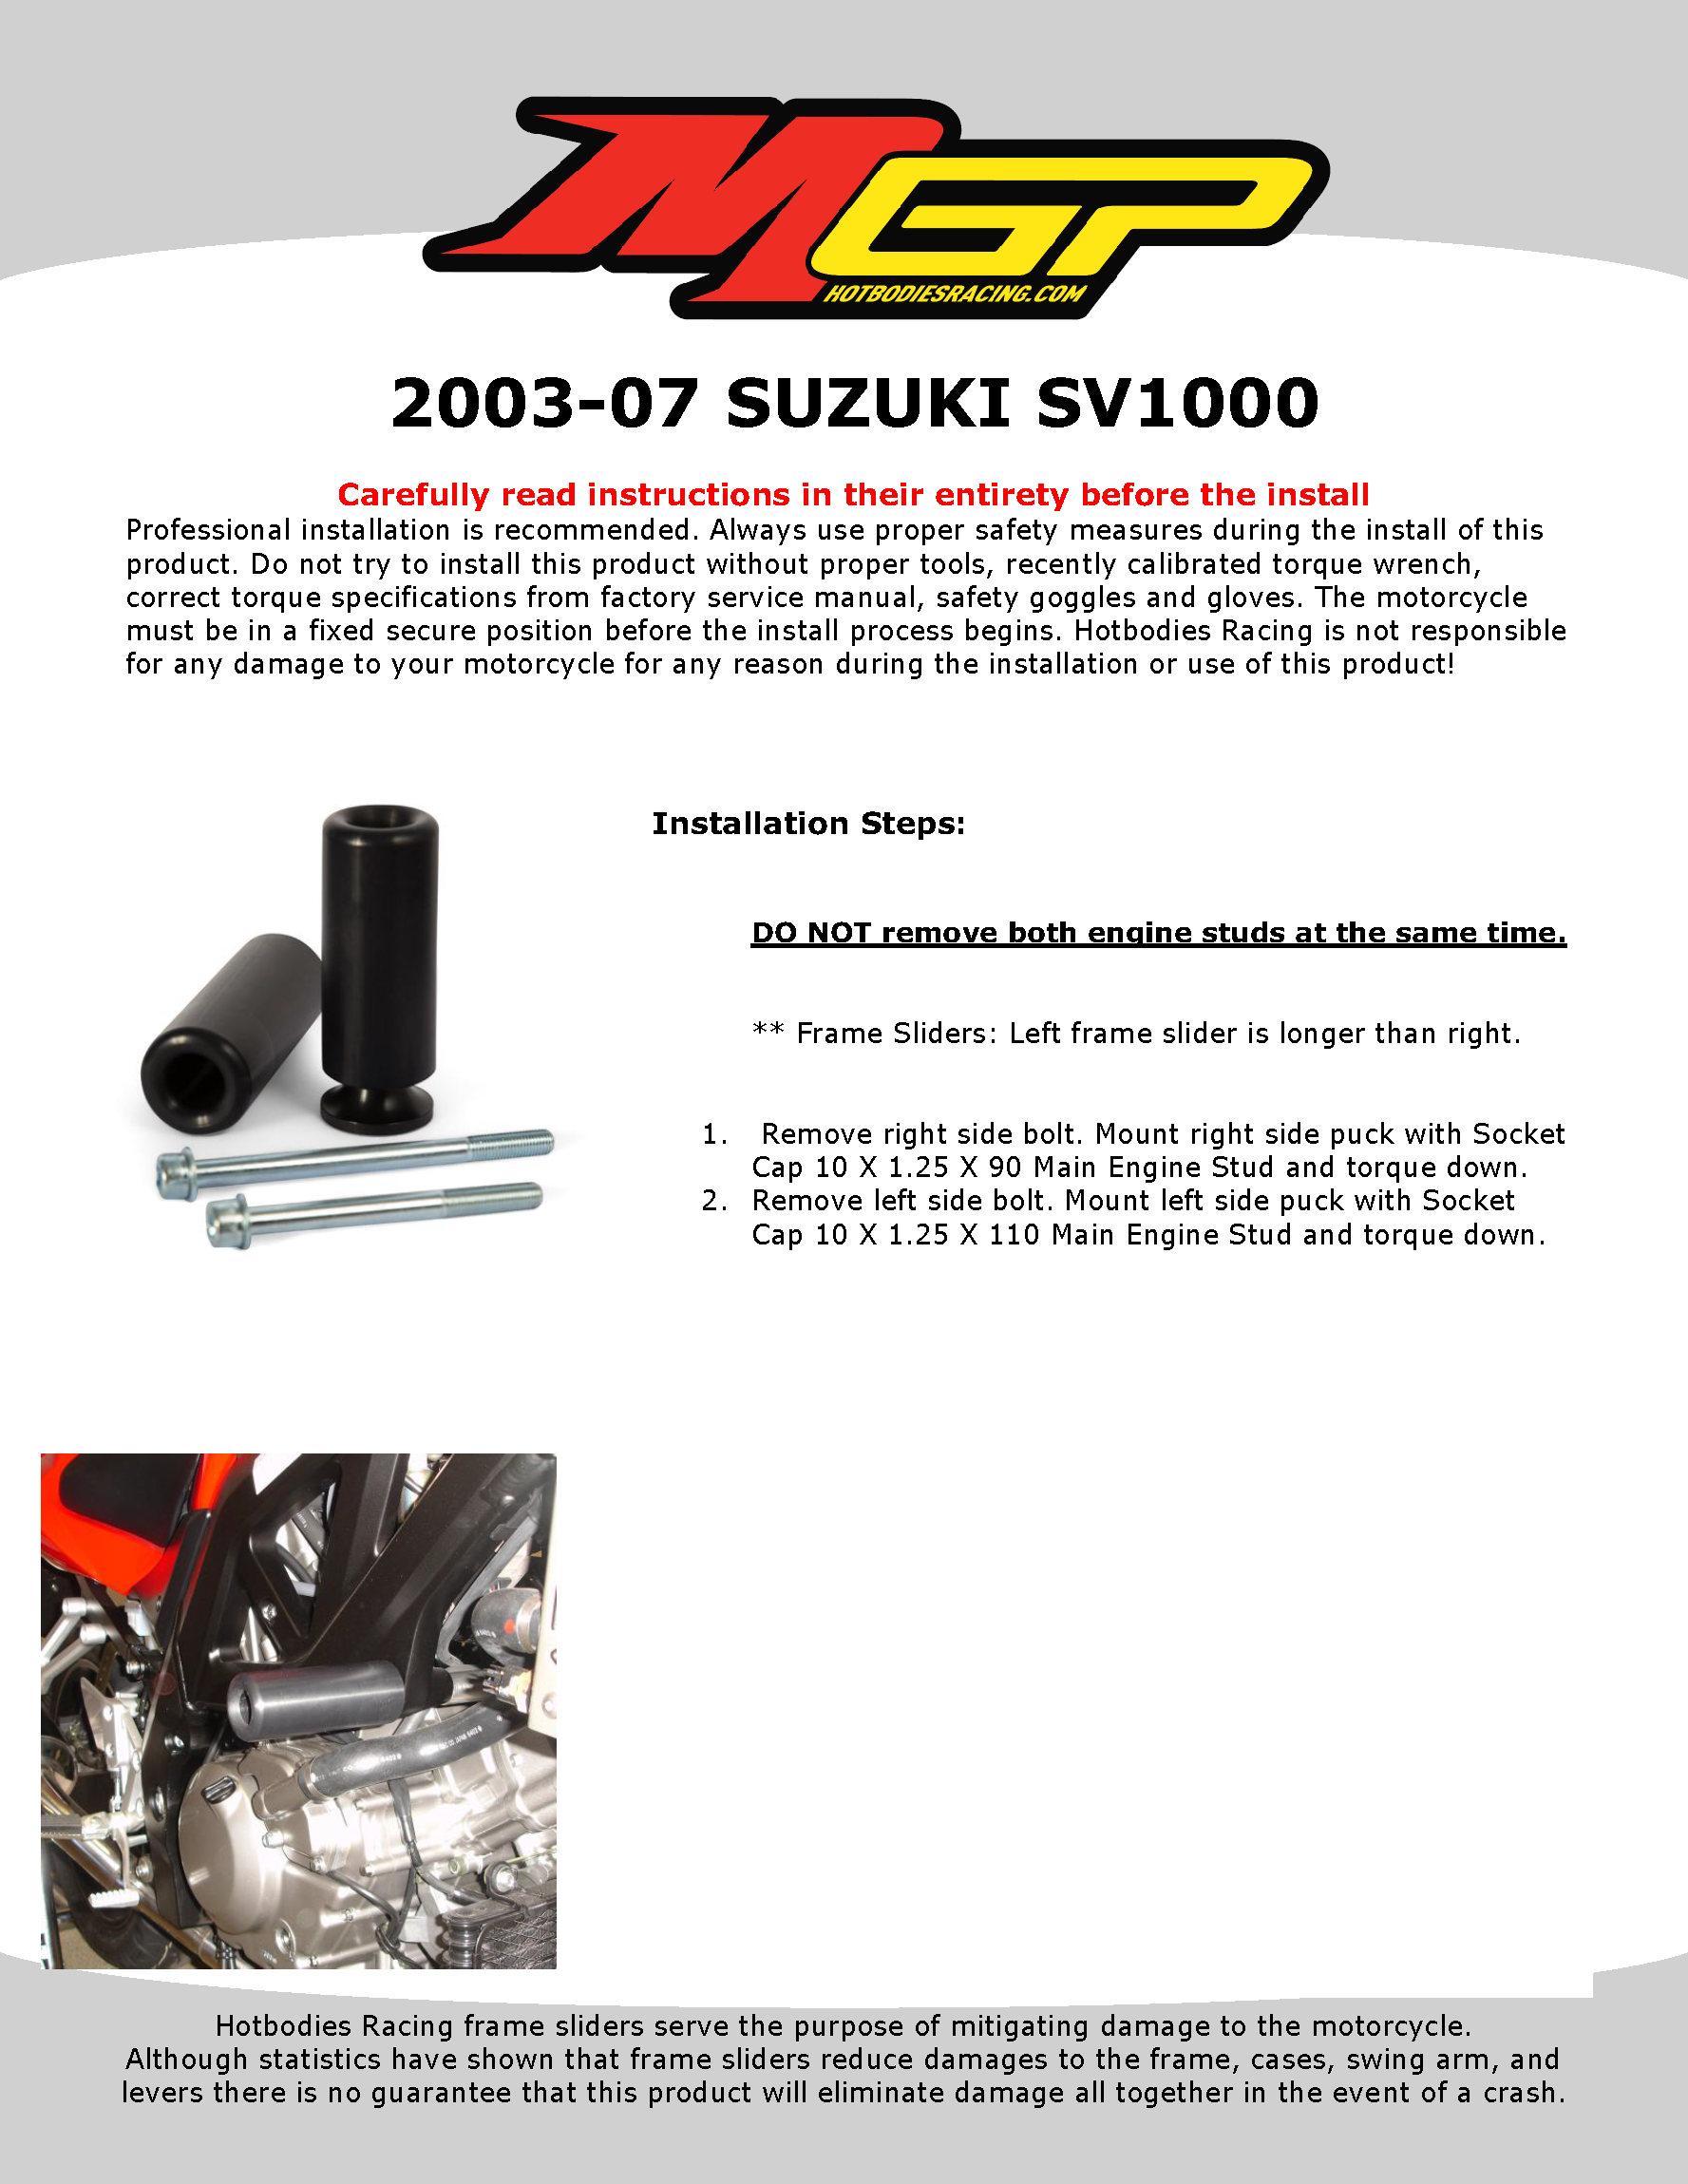 

2003-07 SUZUKI SV1000

